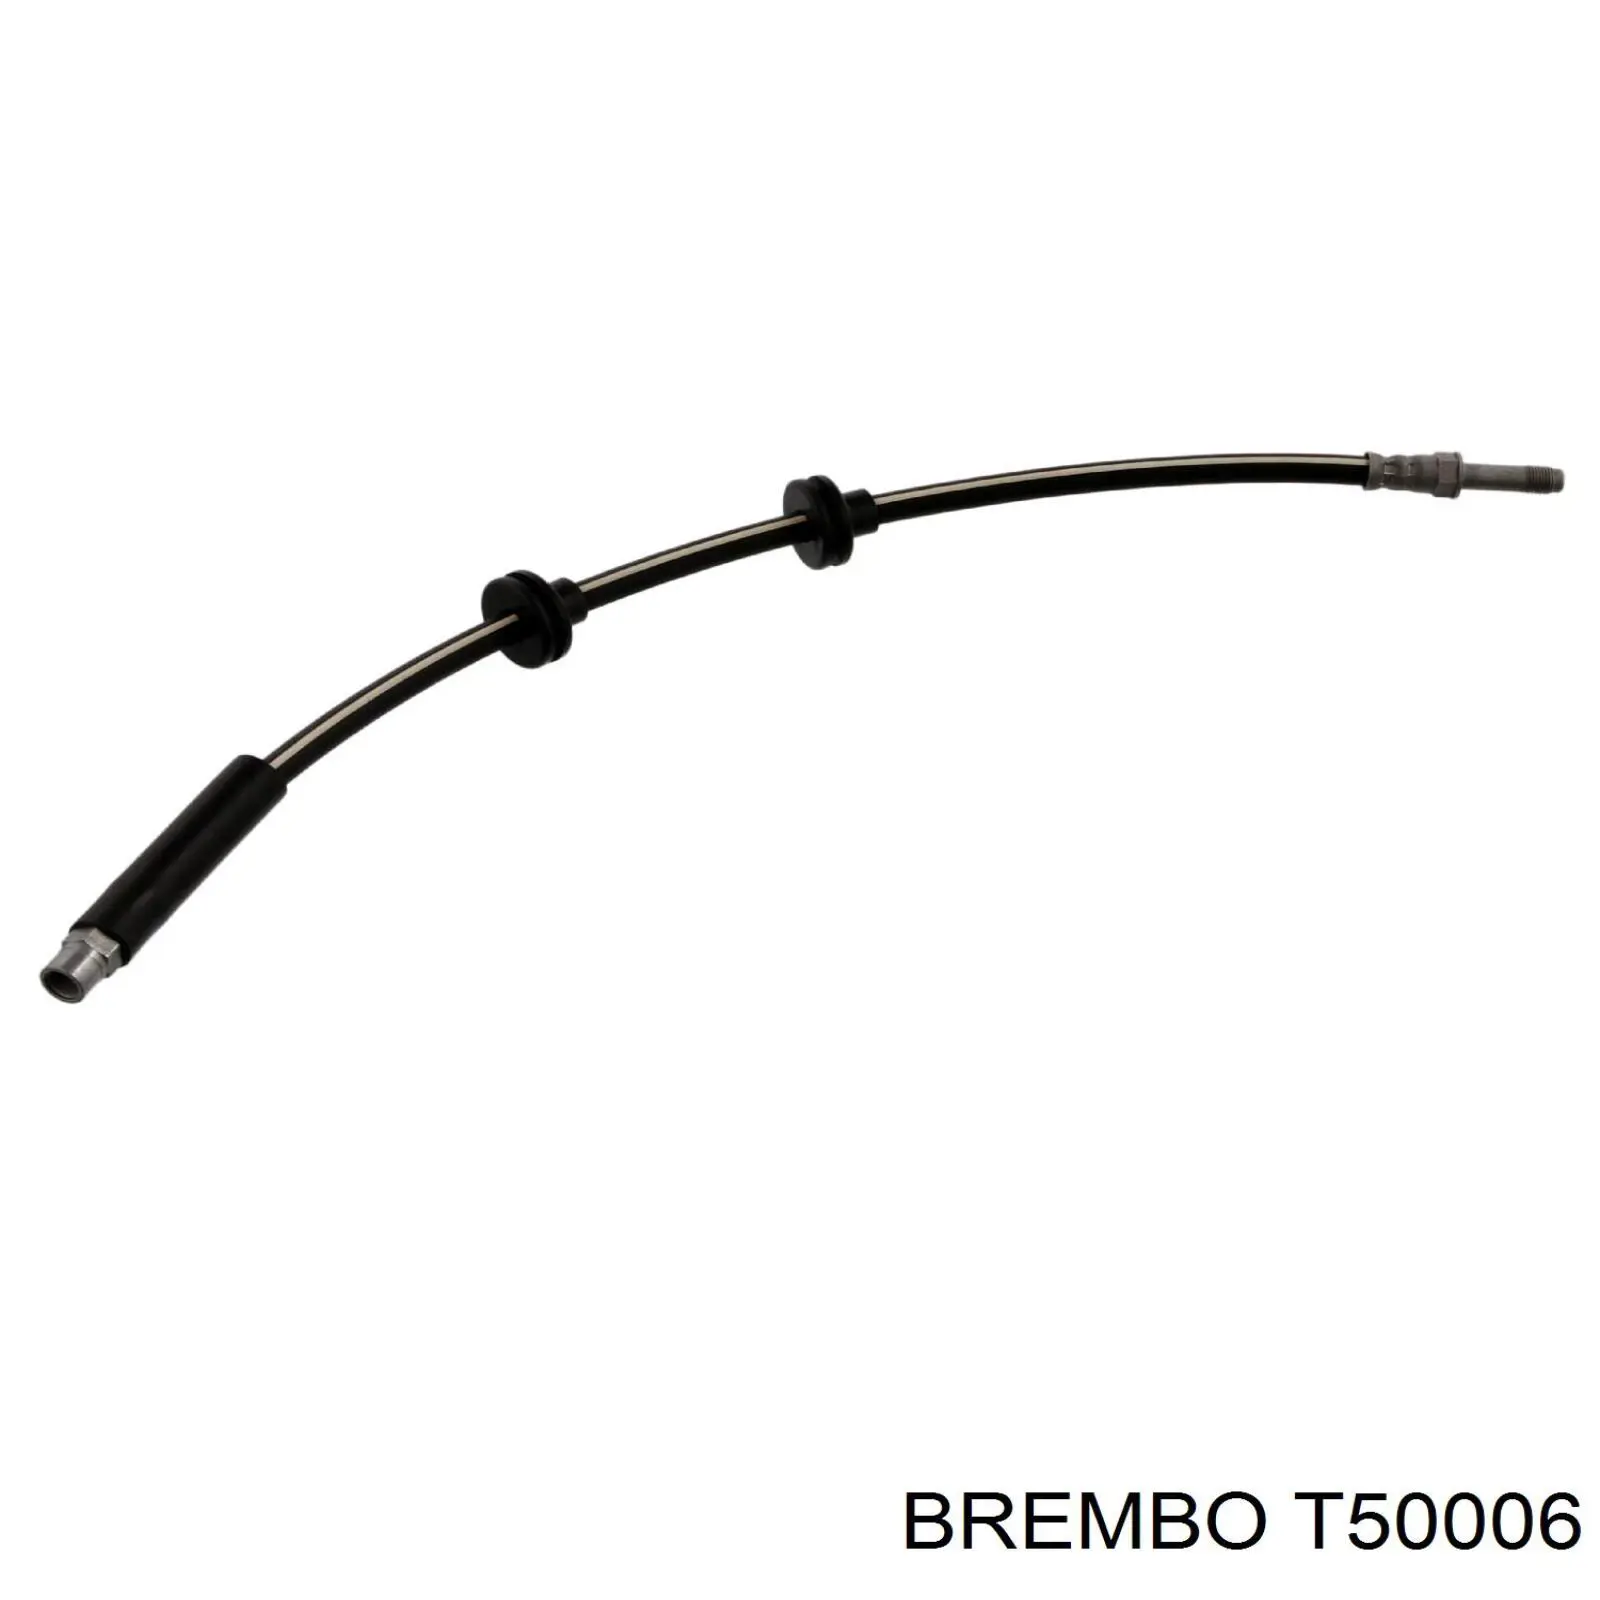 T50006 Brembo latiguillo de freno trasero